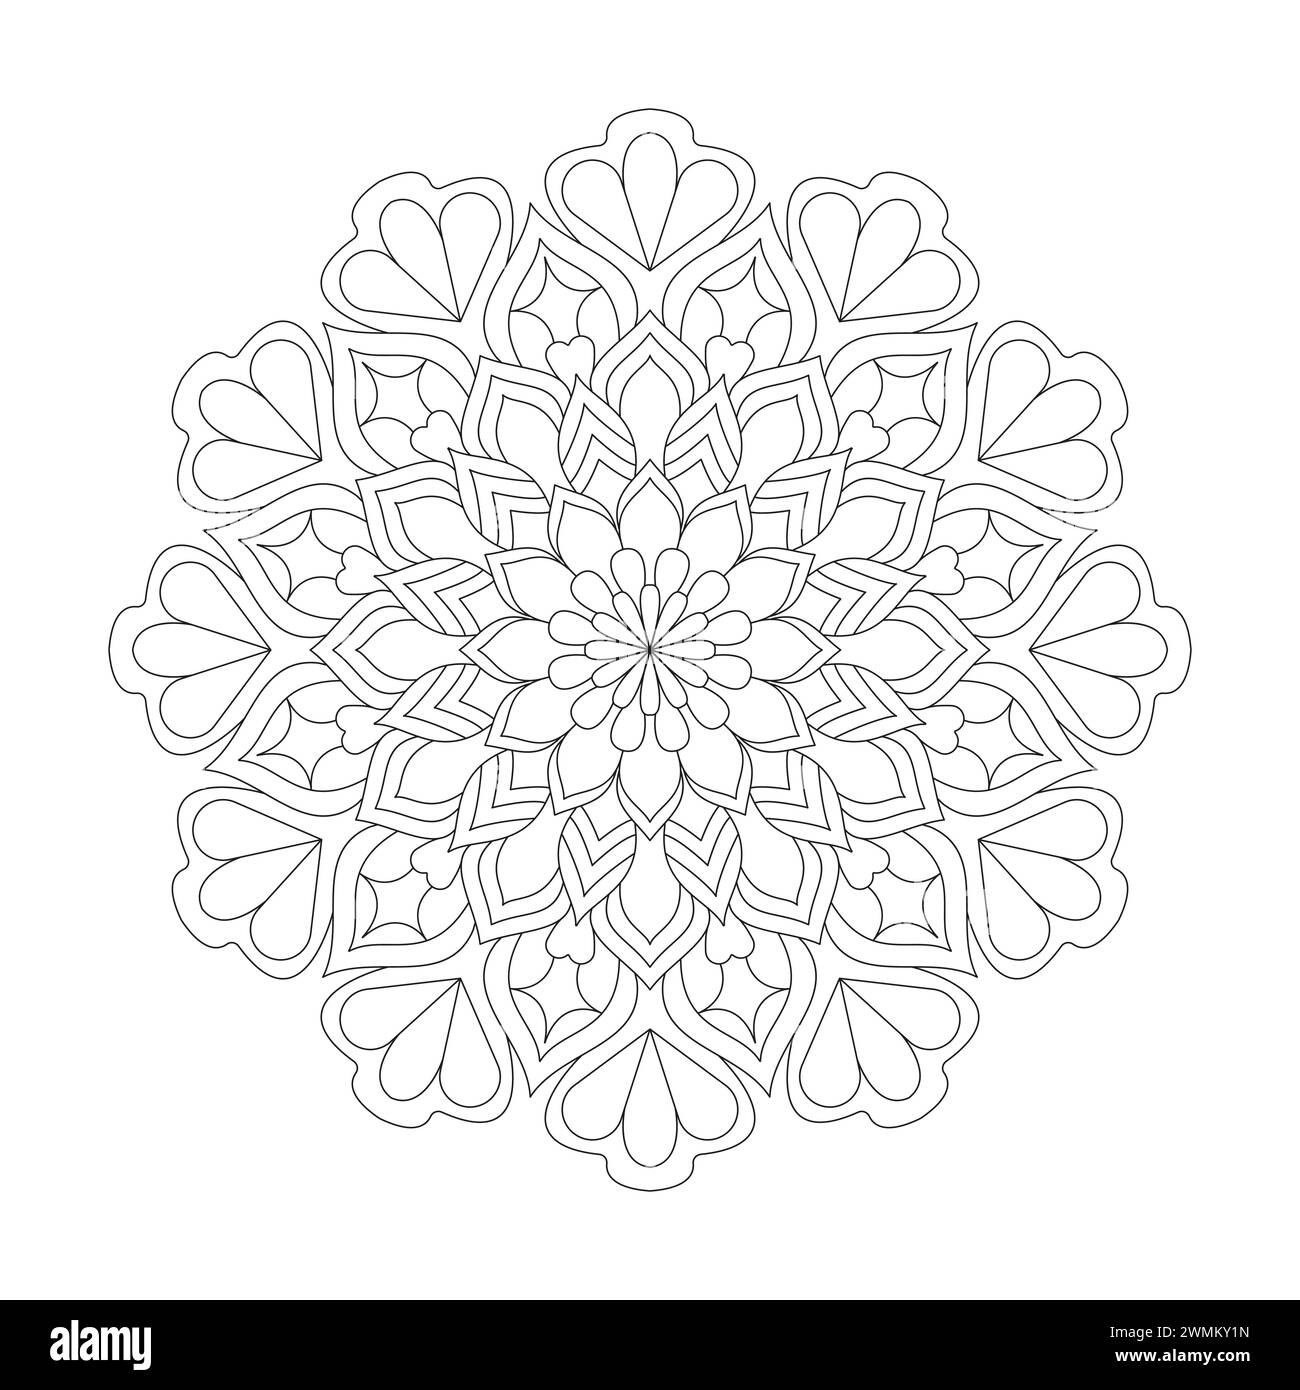 Leuchtende attraktive Mandala Malbuchseite für kdp-Bucheinbau. Friedliche Blütenblätter, Fähigkeit zum Entspannen, Gehirnerlebnisse, harmonischer Hafen, friedlich Stock Vektor